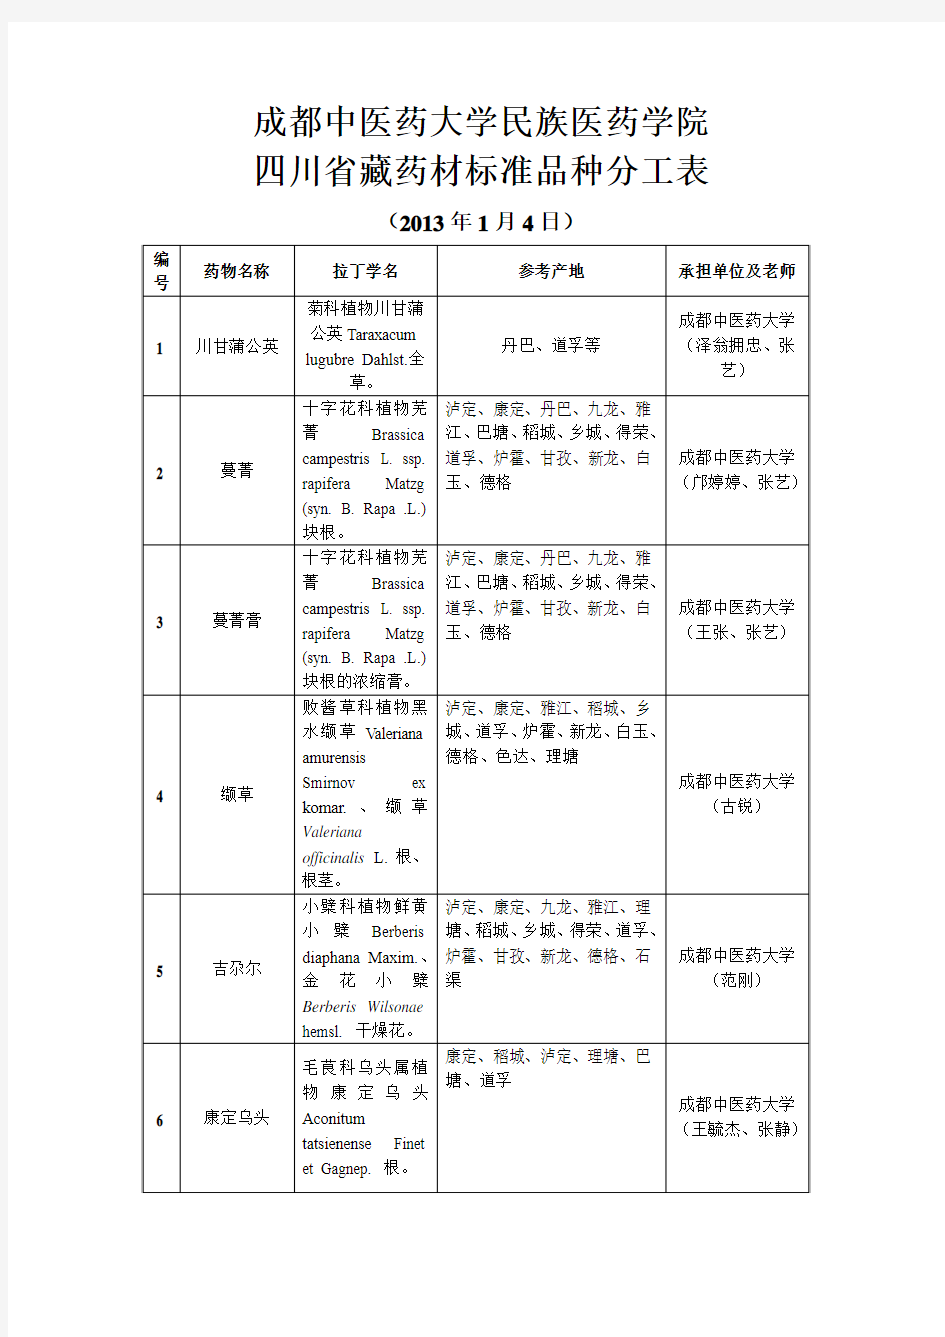 成都中医药大学民族医药学院承担四川省藏药材标准品种分工表